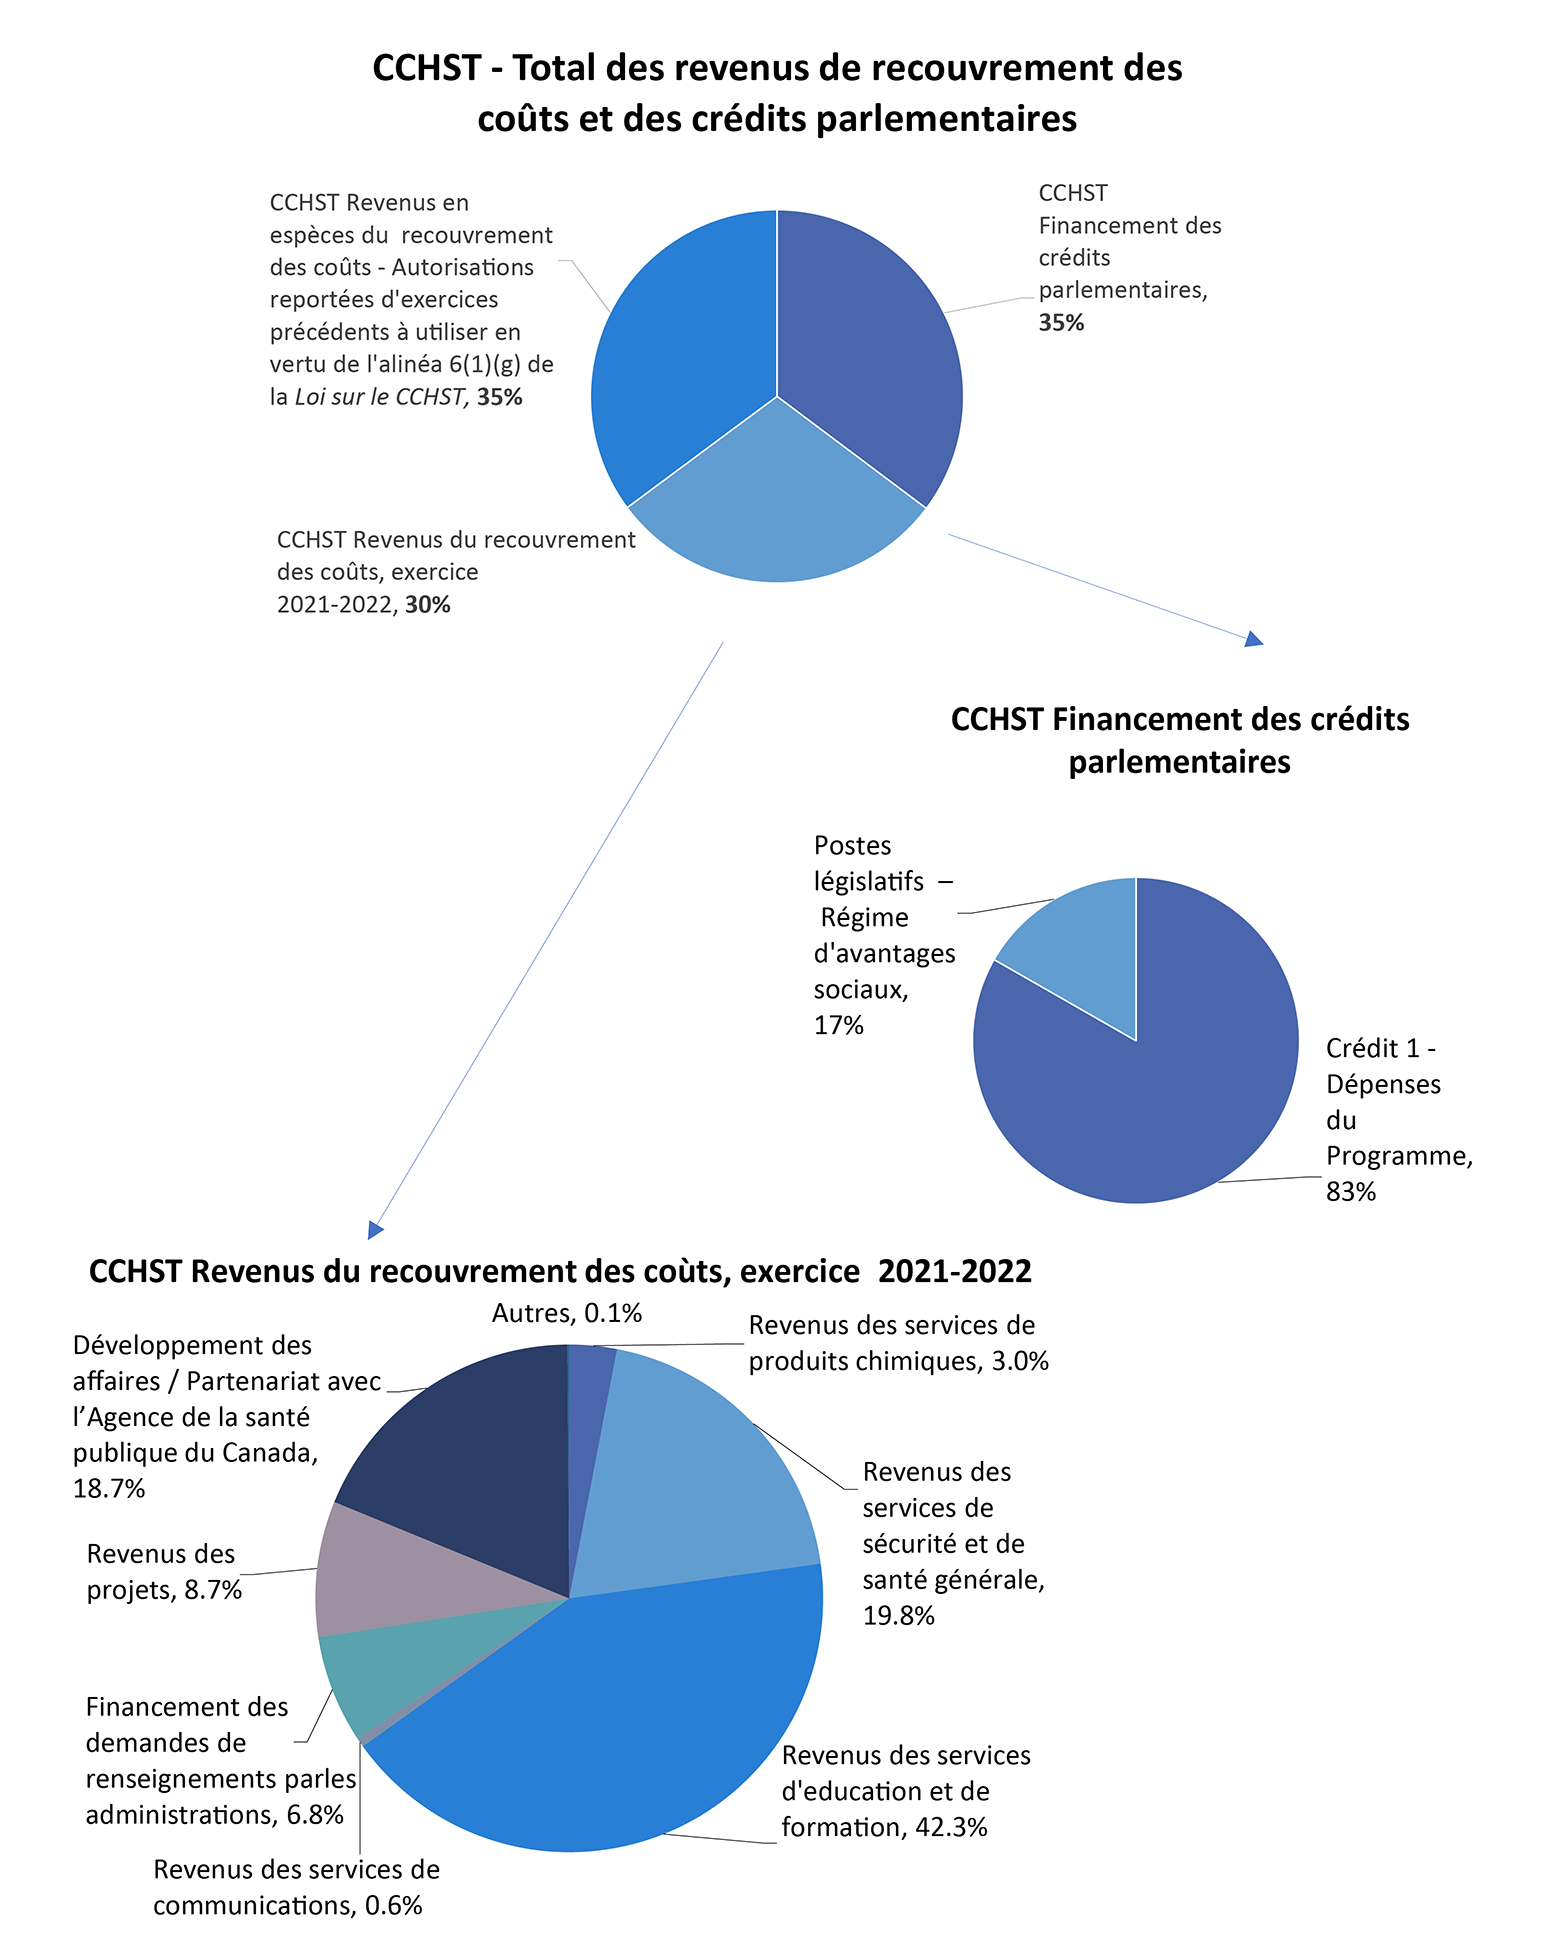 Graphique des CCHST – Total des revenus de recouvrement des coûts et des crédits parlementaires, CCHST Financement des crédits parlementaires, CCHST Revenus du recouvrement des coûts, exercice 2021-2022